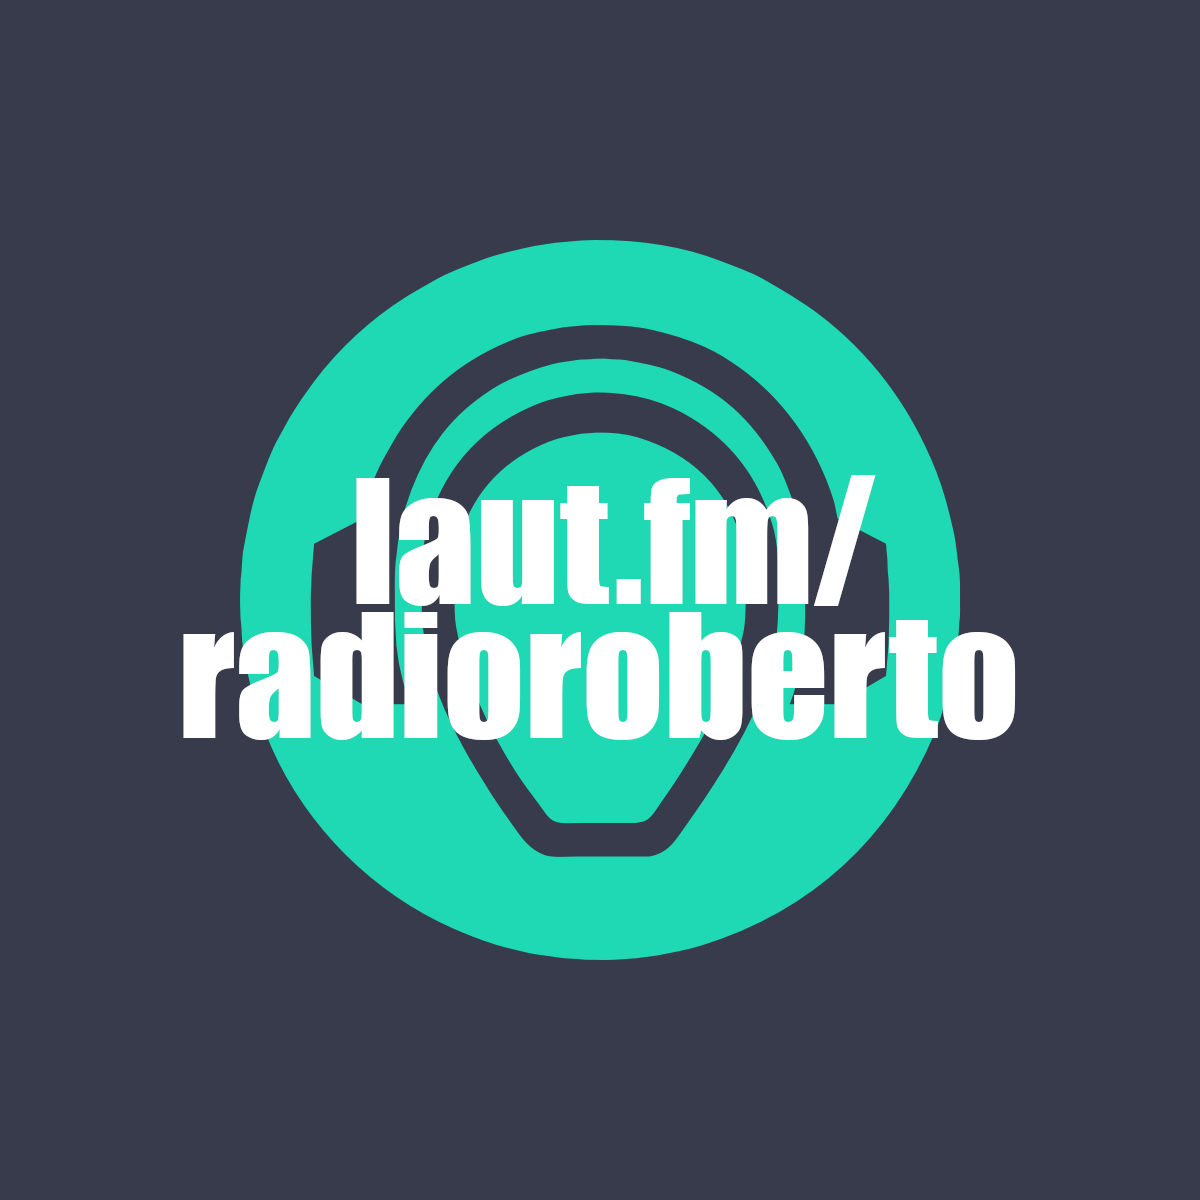 Radio Roberto Solo Emergenti é adesso disponibile su LAUT-FM